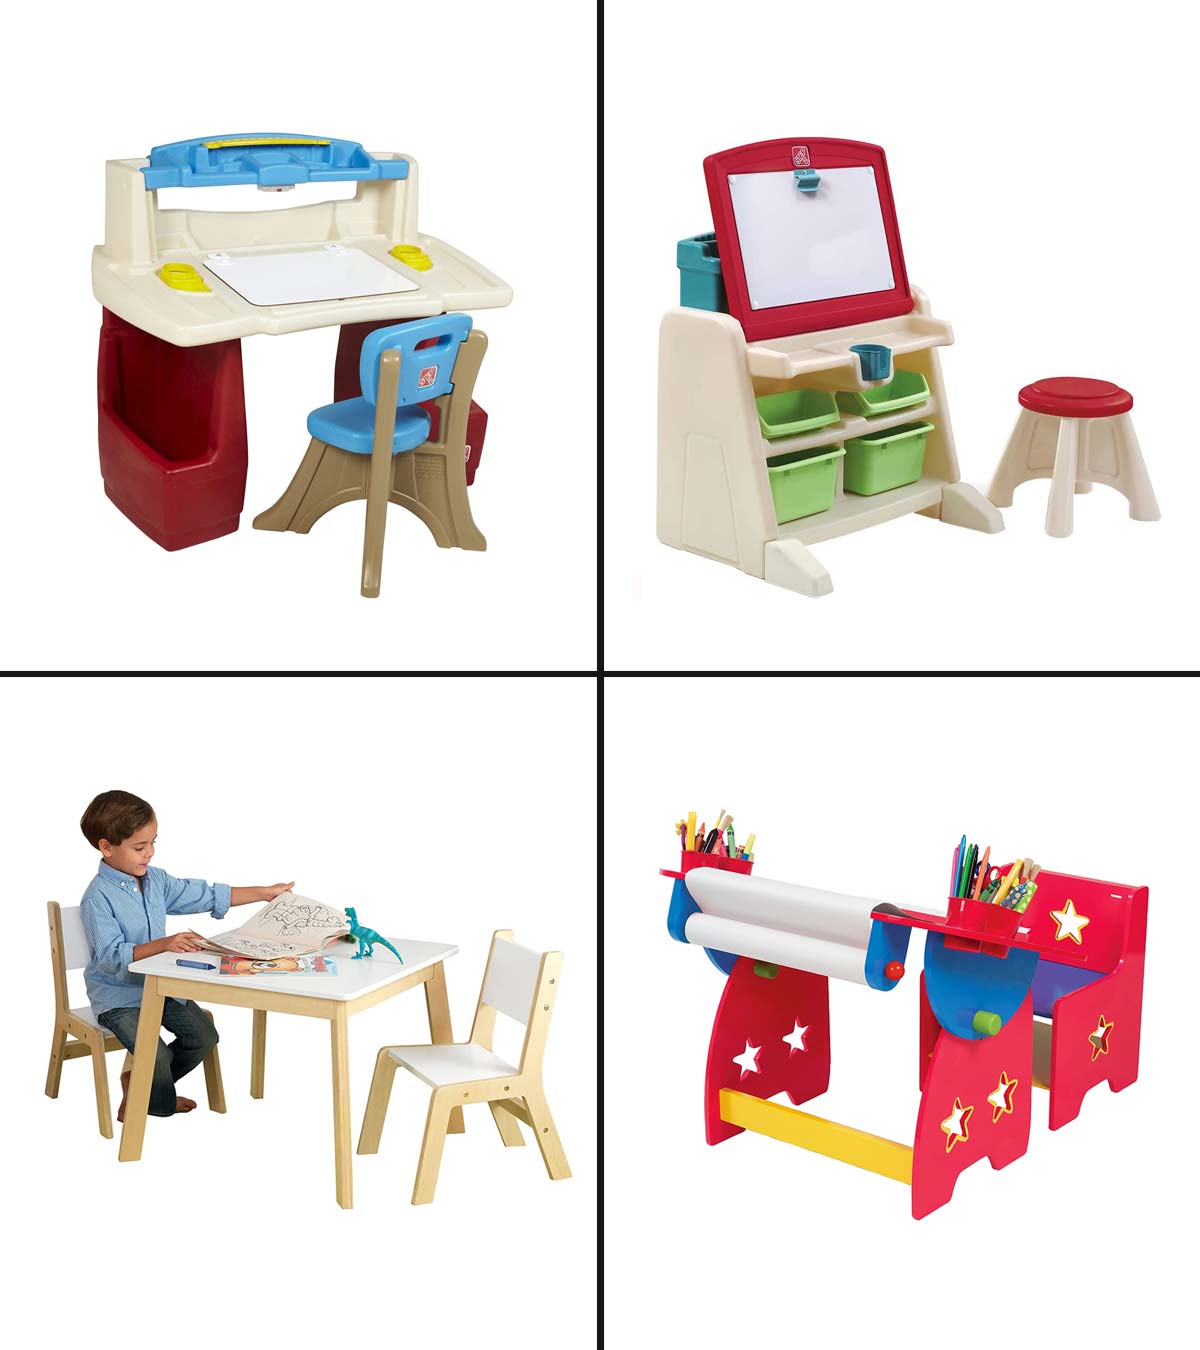 https://www.momjunction.com/wp-content/uploads/2020/05/15-Best-Art-Tables-For-Kids.jpg